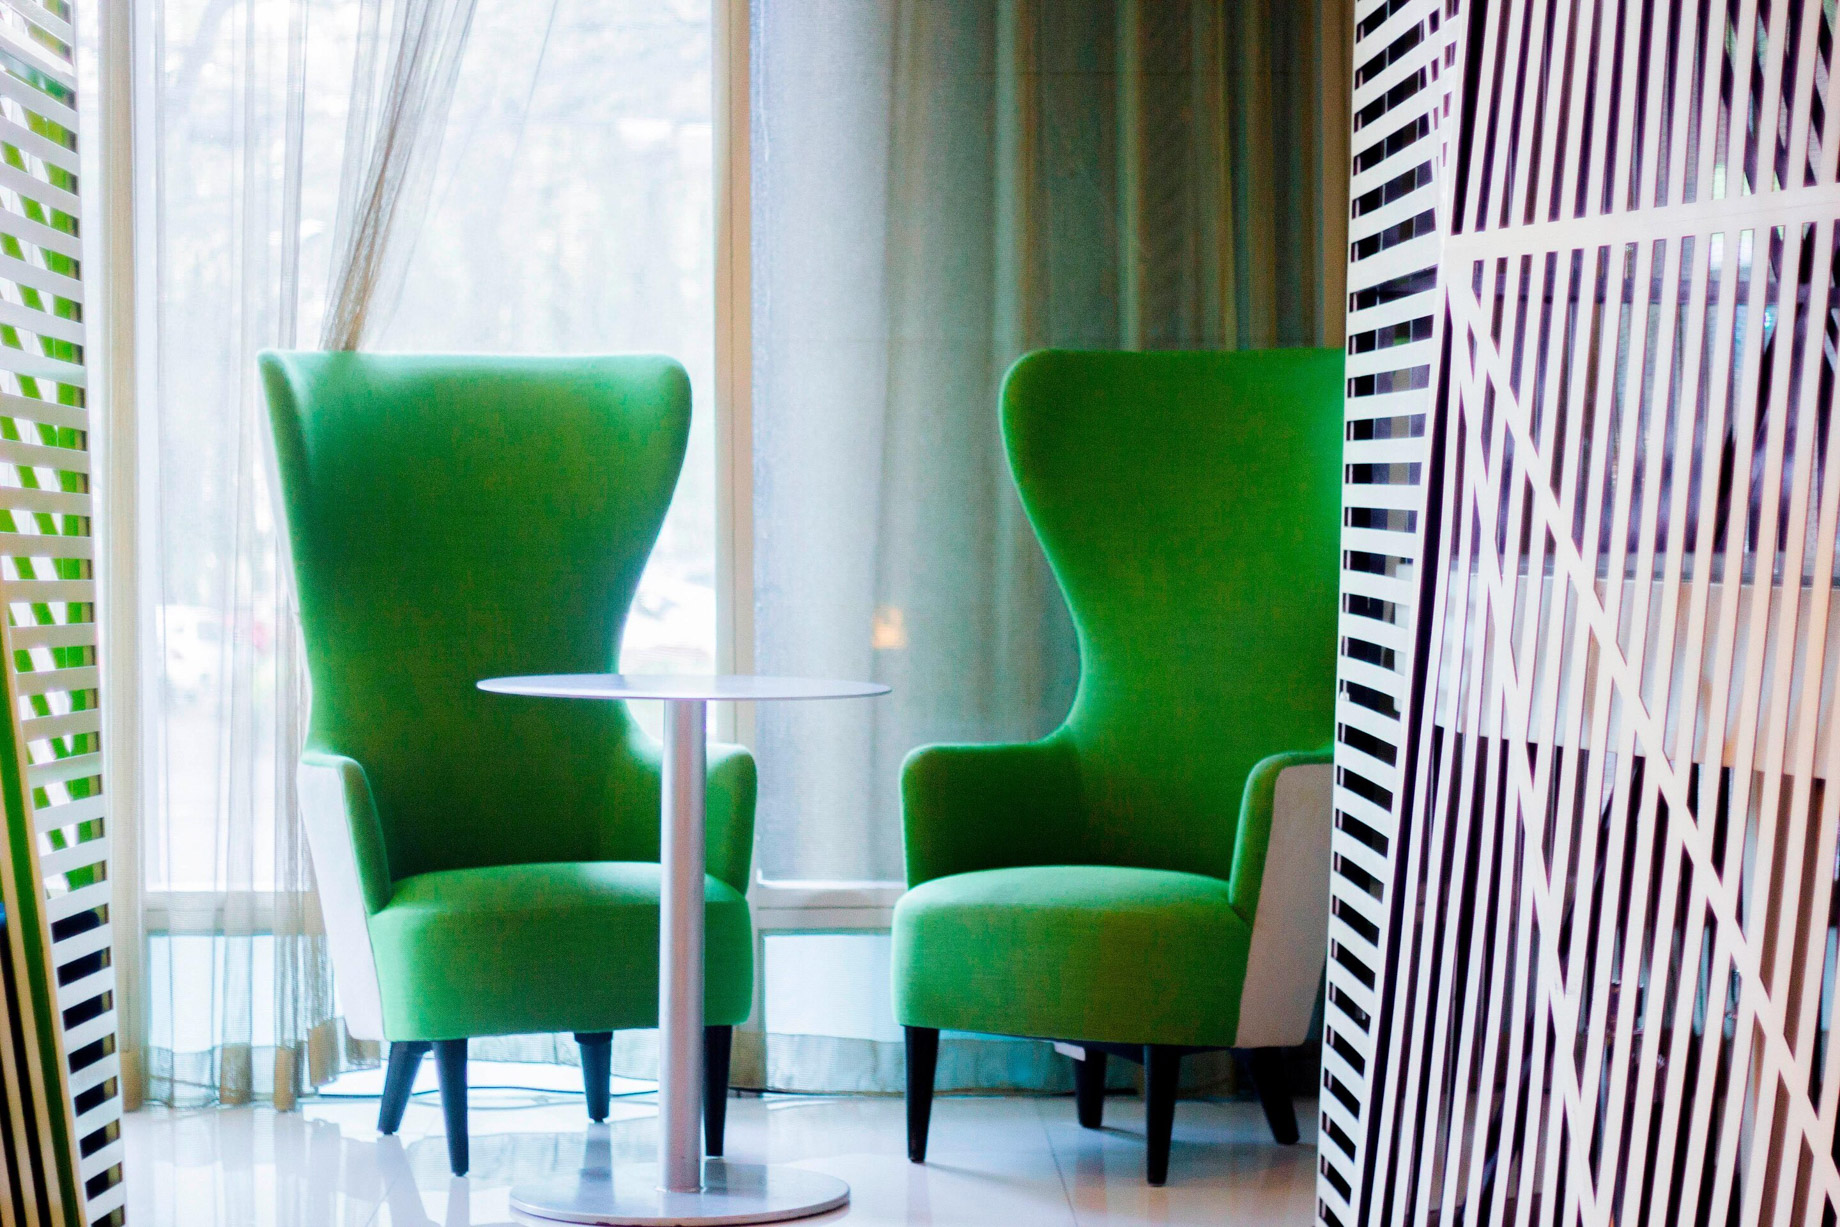 W Mexico City Hotel – Polanco, Mexico City, Mexico – Lobby Living Room Bar Stylish Chairs